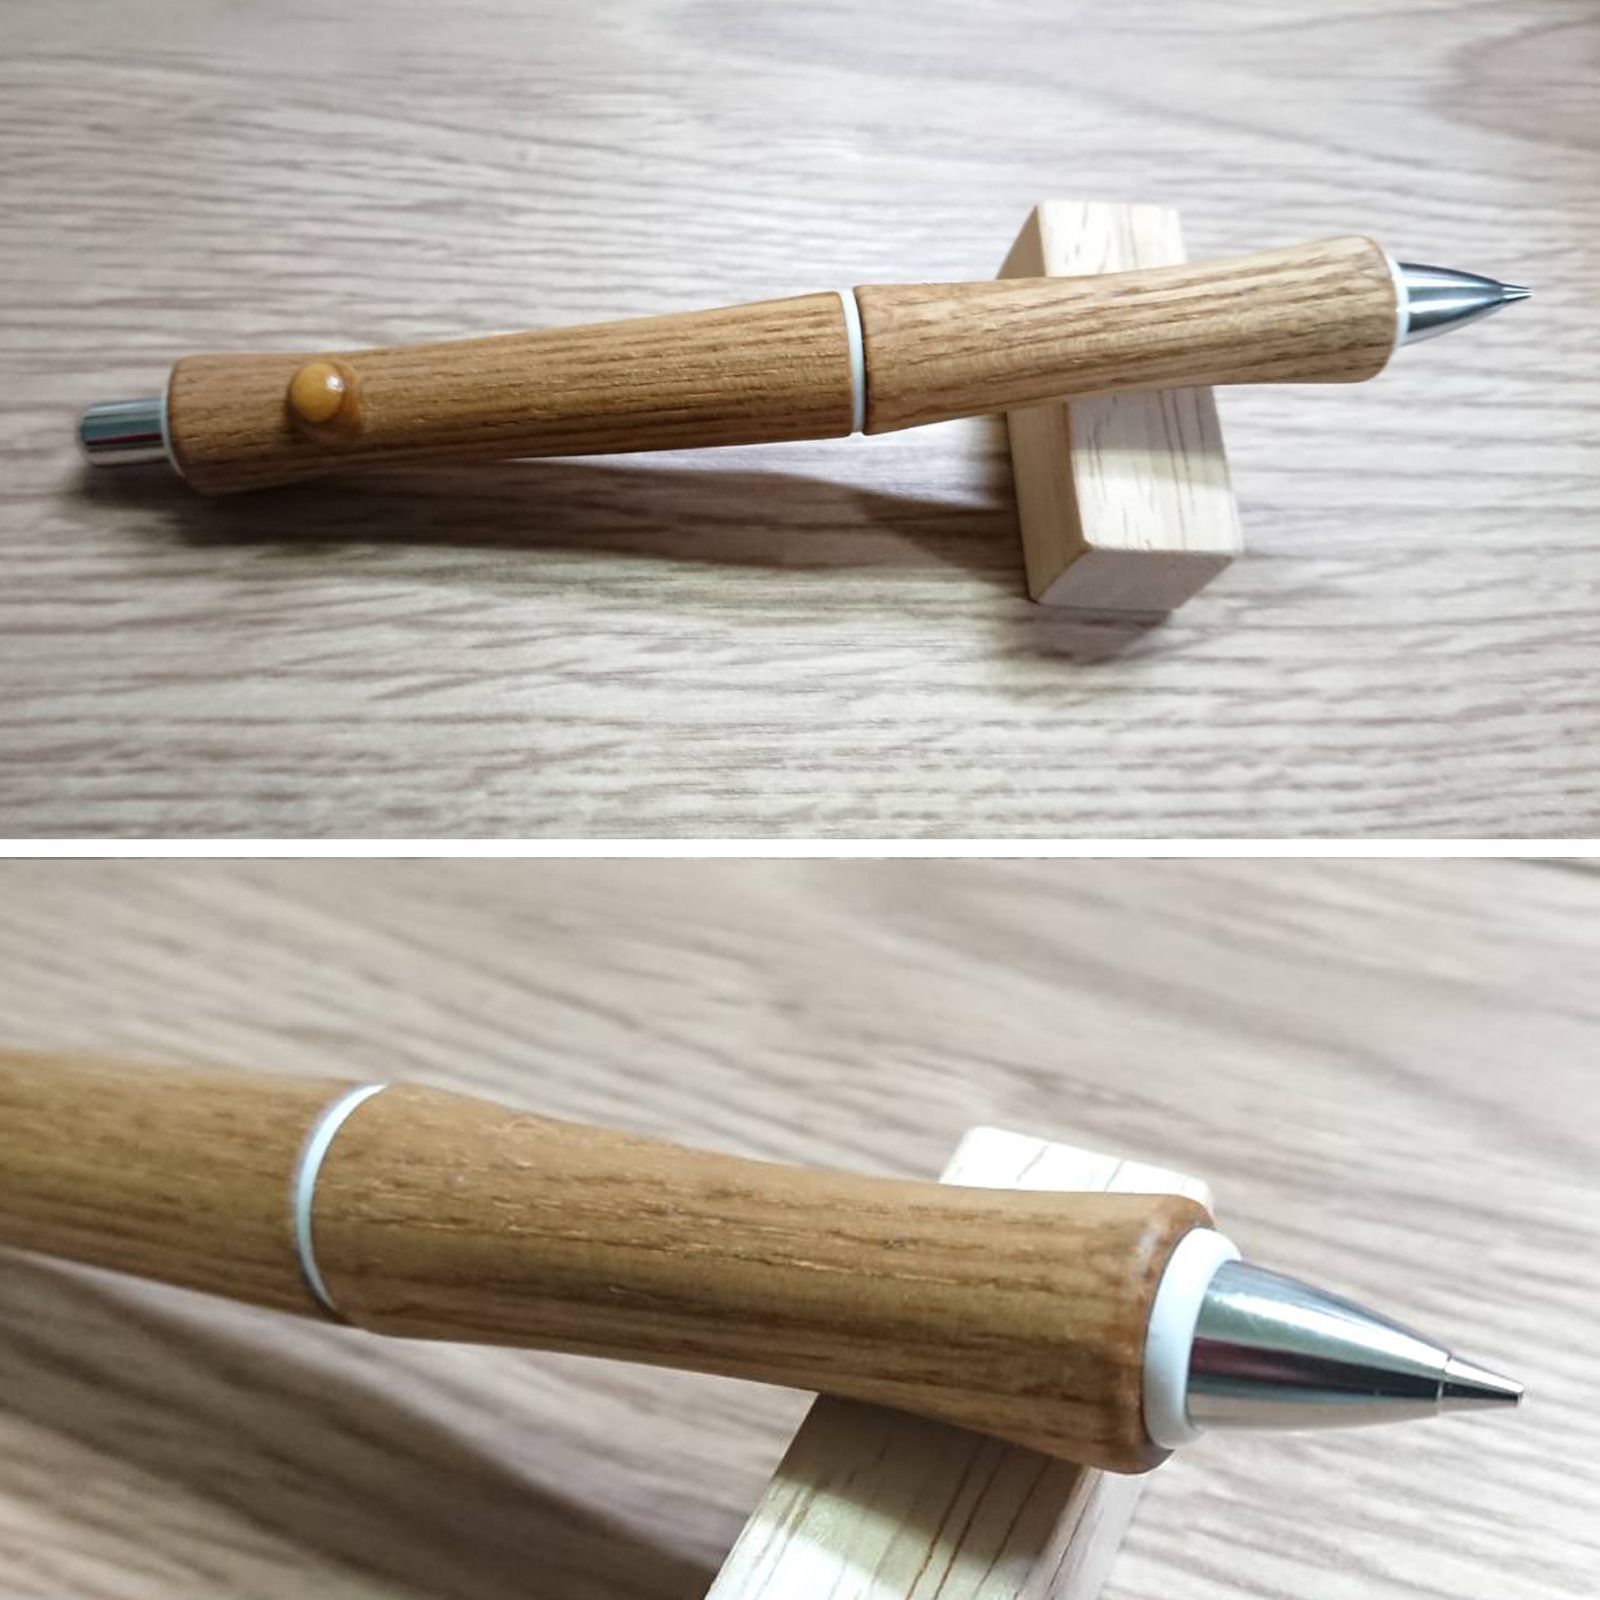 木軸シャーペン - 筆記具